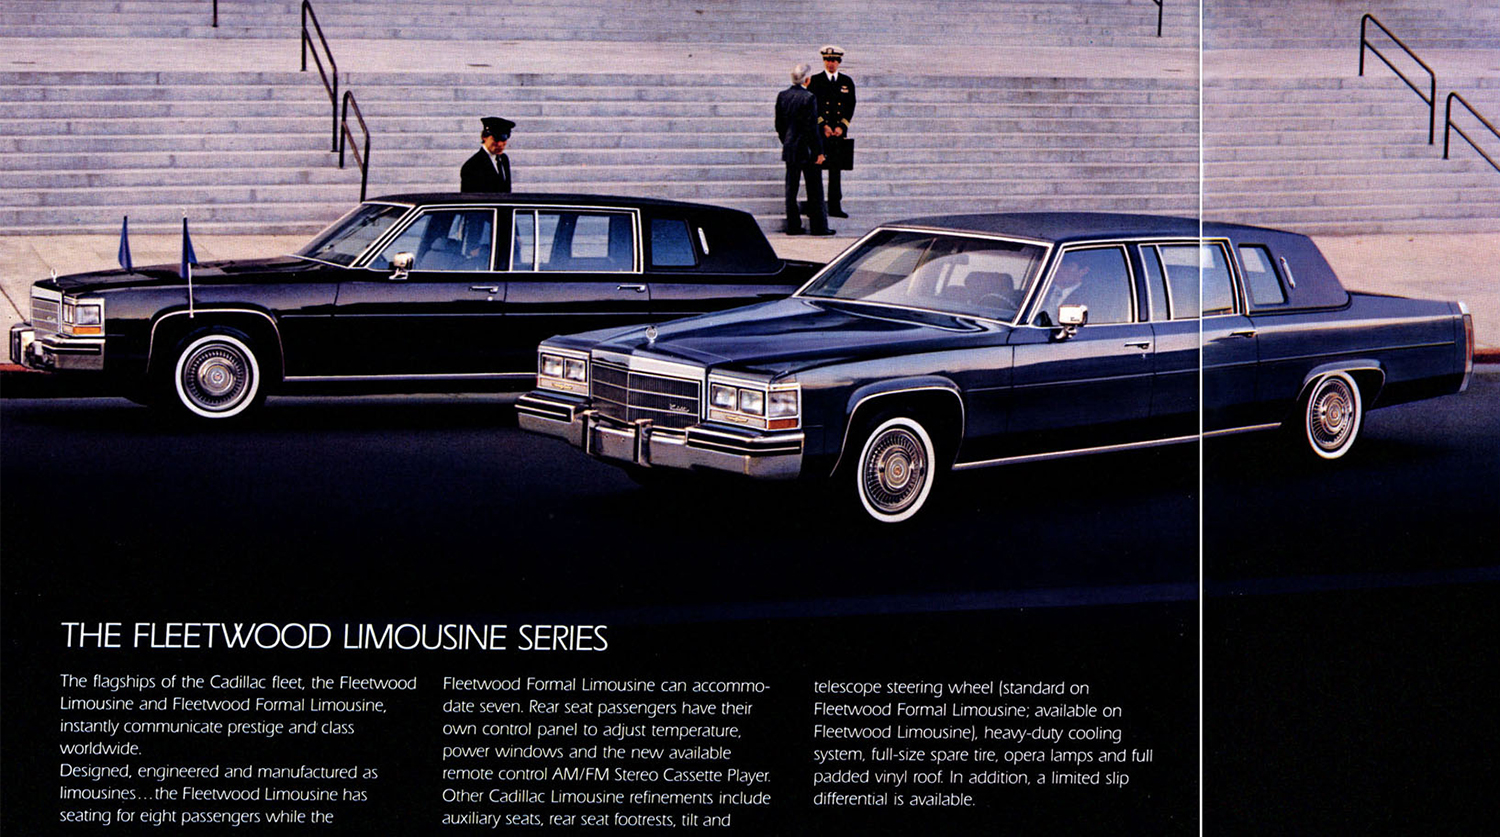 Лимузины Cadillac Fleetwood 1984 года. Страница рекламного буклета
